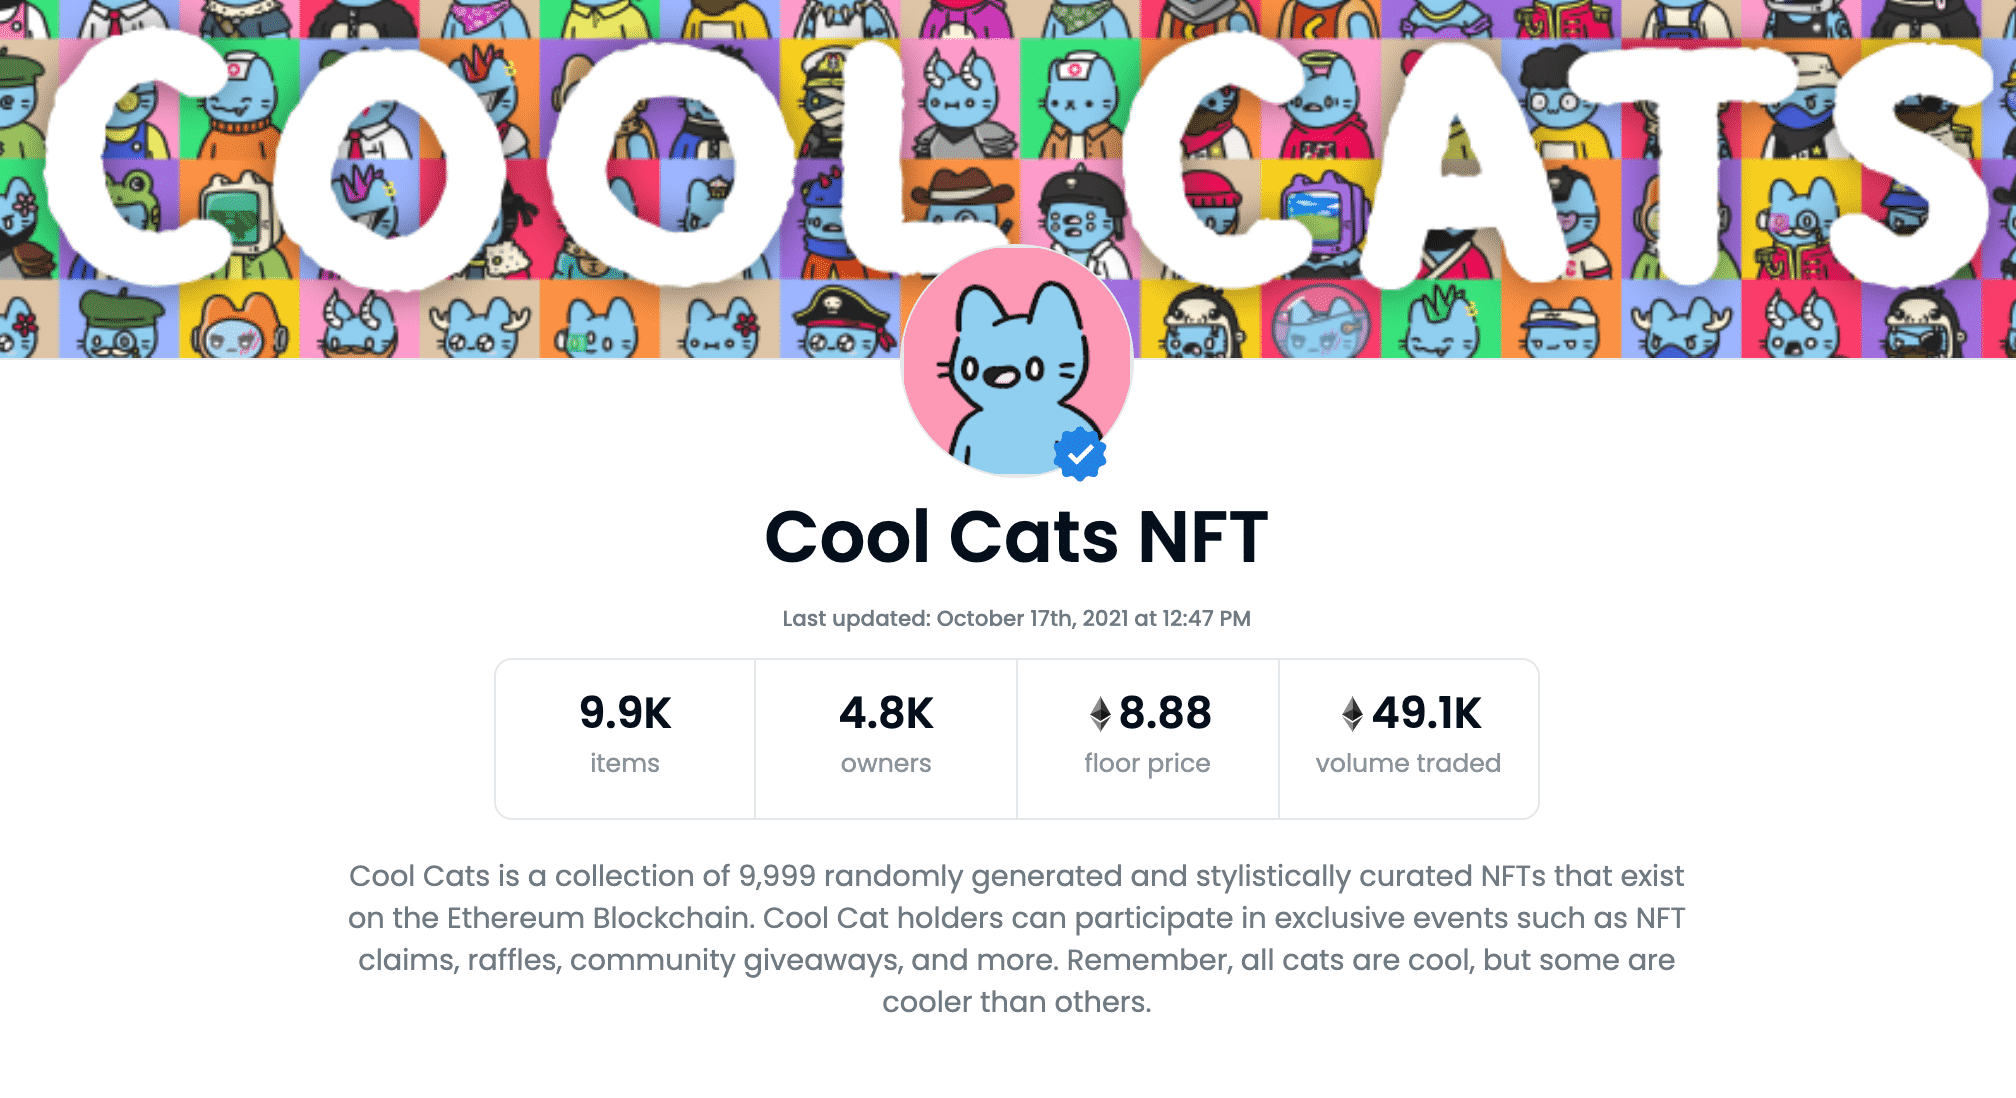 Cool Cats NFT Openseassa